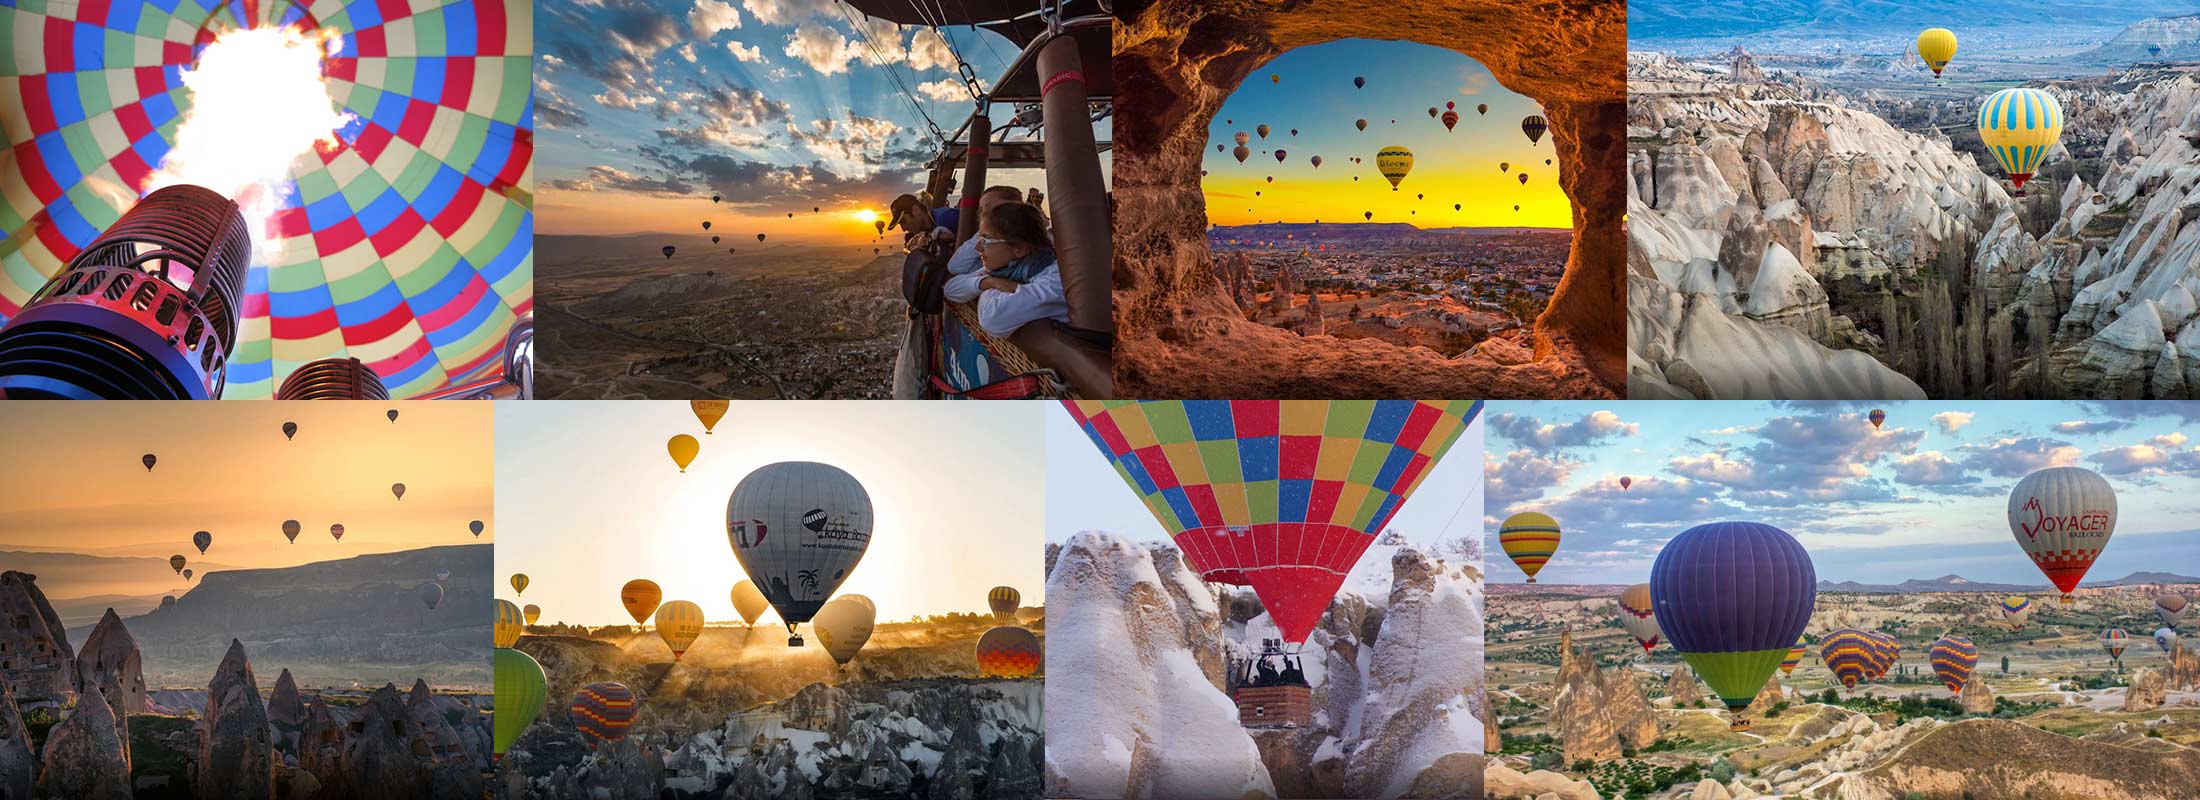 cappadocia-hot-air-balloon-tour-2